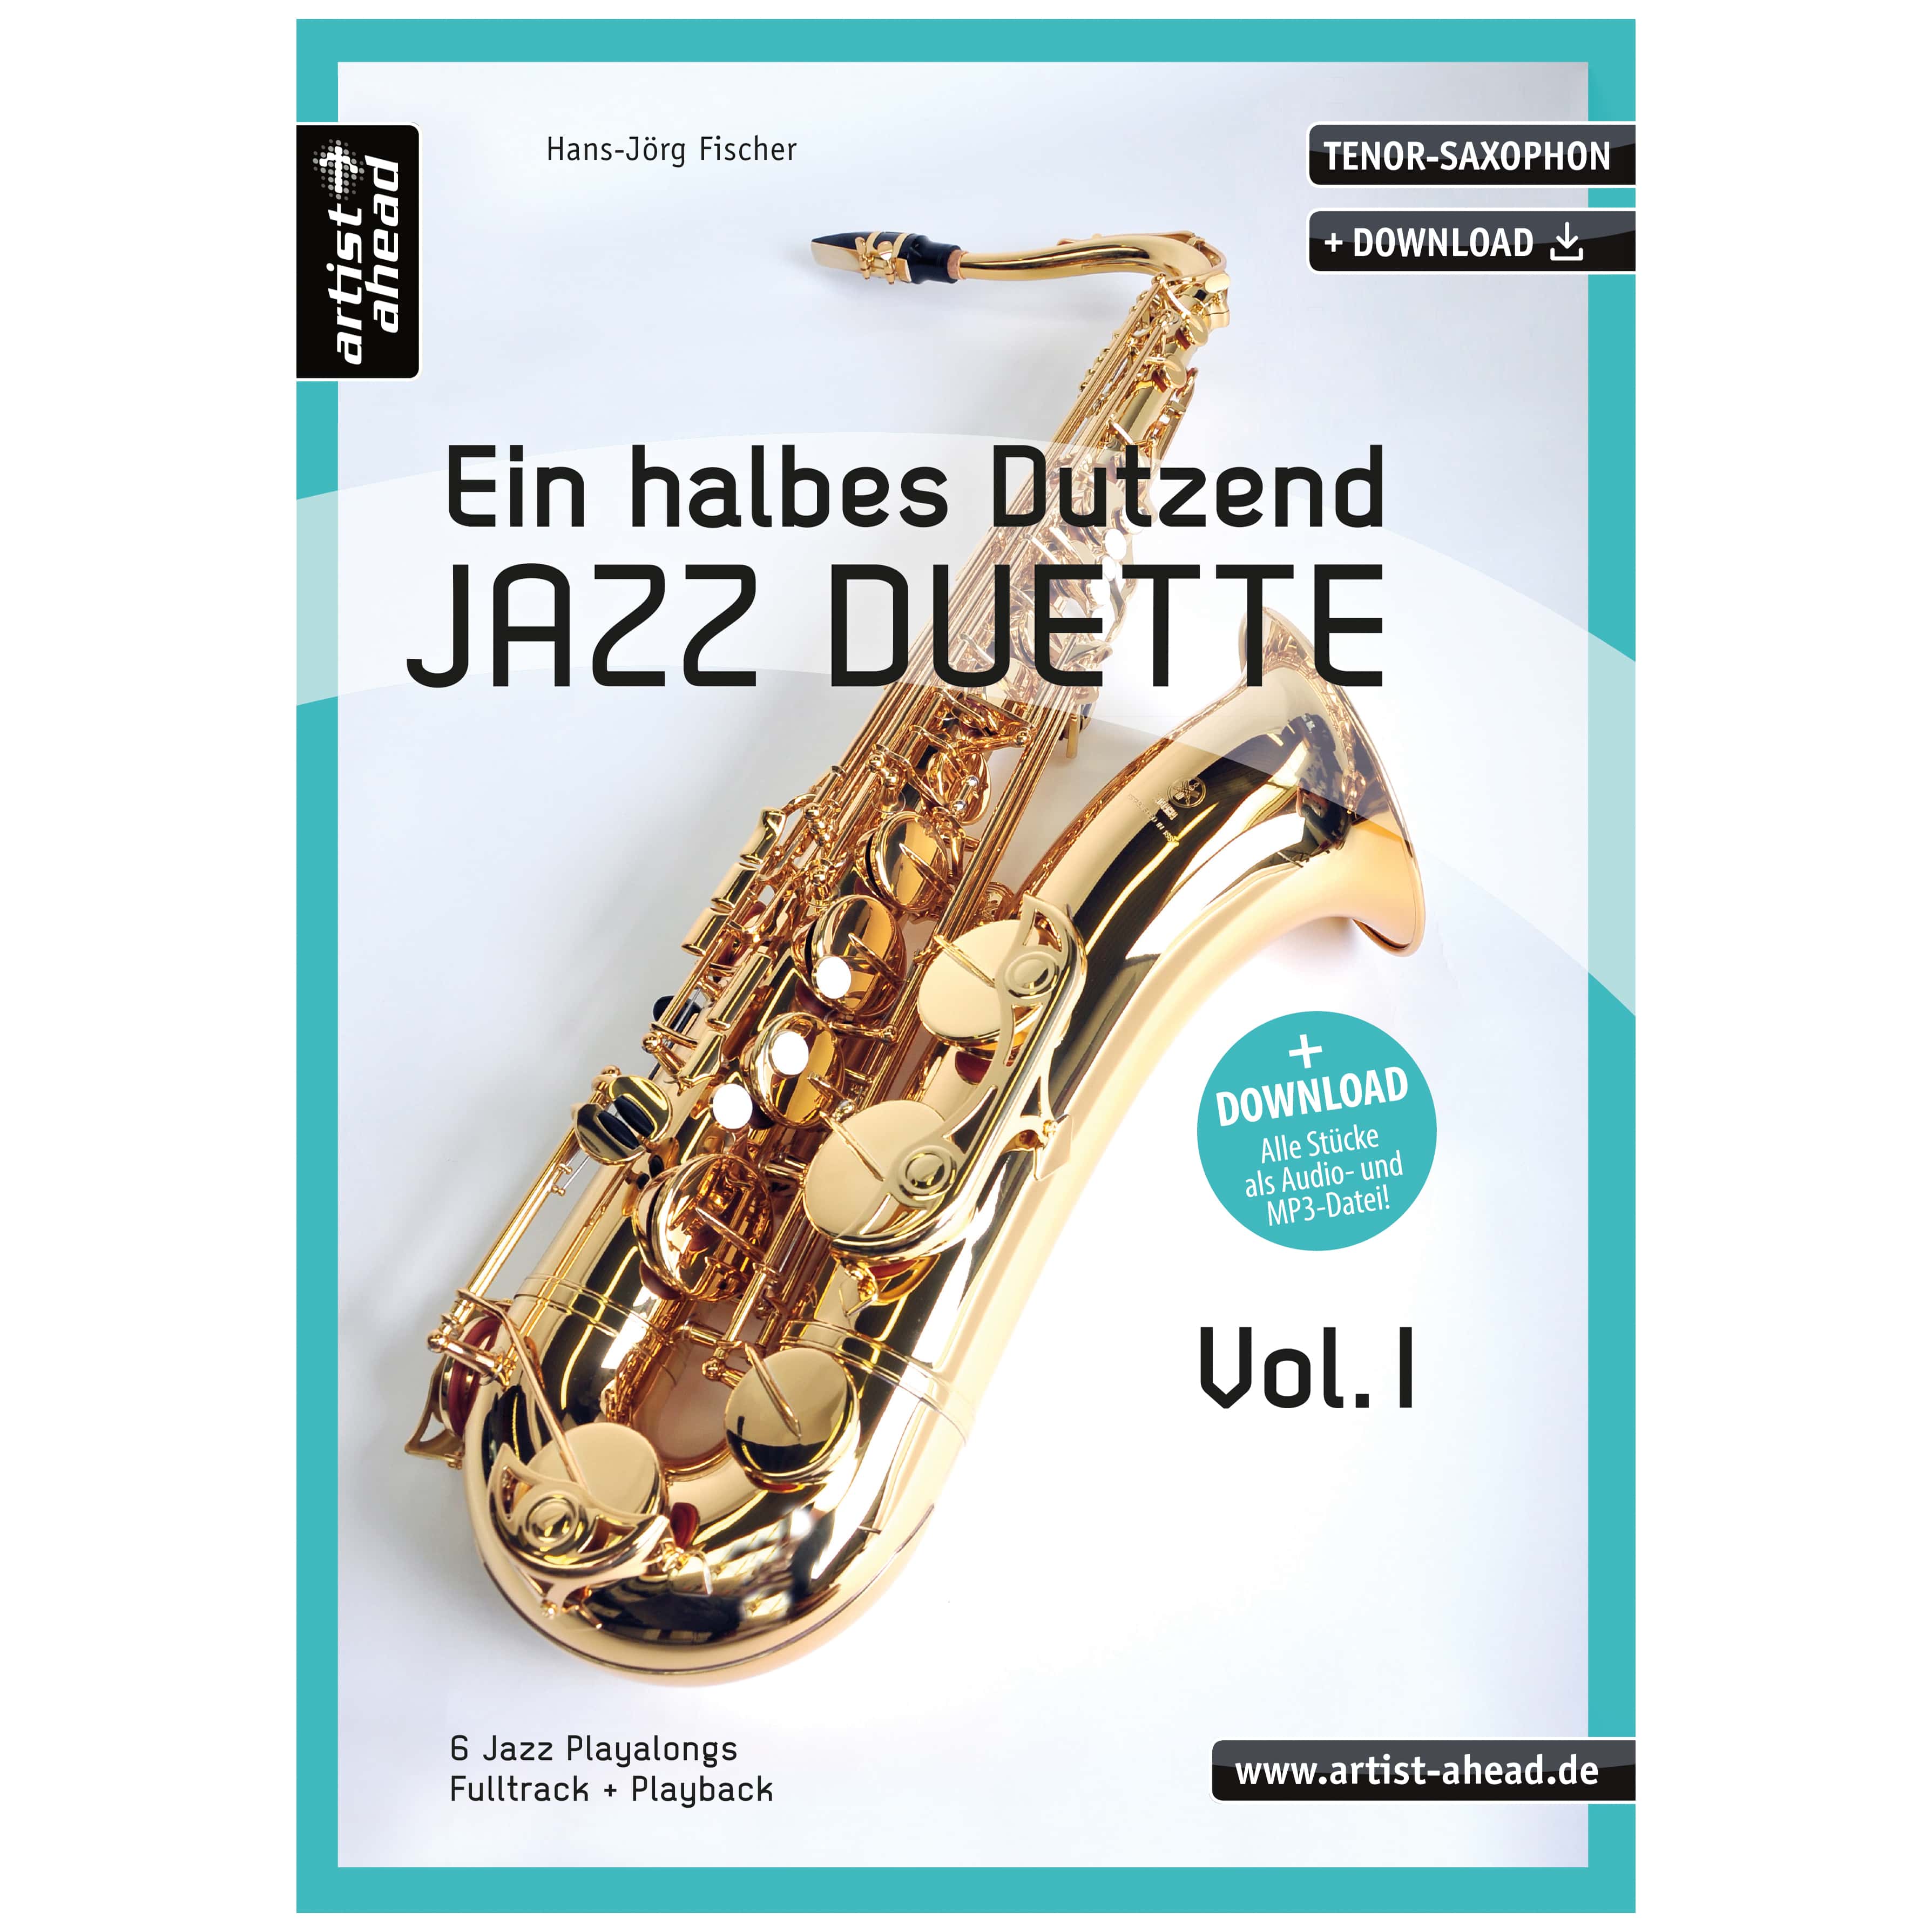 Artist Ahead Ein halbes Dutzend Jazz Duette - Vol. 1 - Tenor-Saxophon - Hans-Jörg Fischer